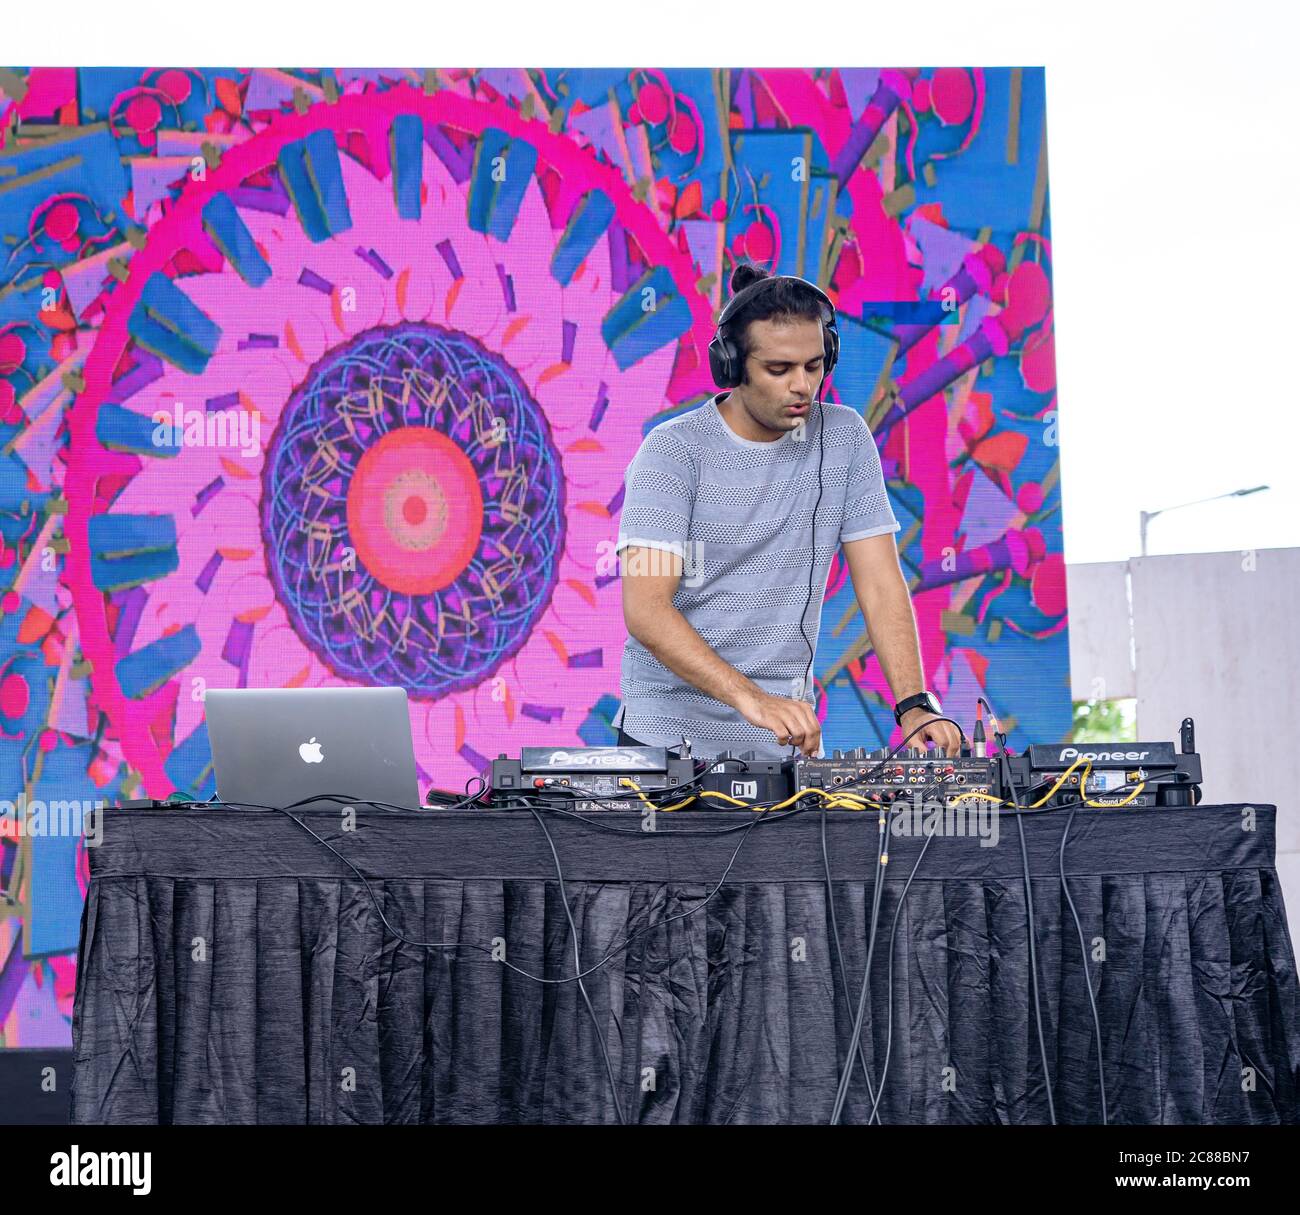 Ein professioneller DJ, der bei einem Festival Musik mit digitalen DJ-Plattenspielern spielt Stockfoto